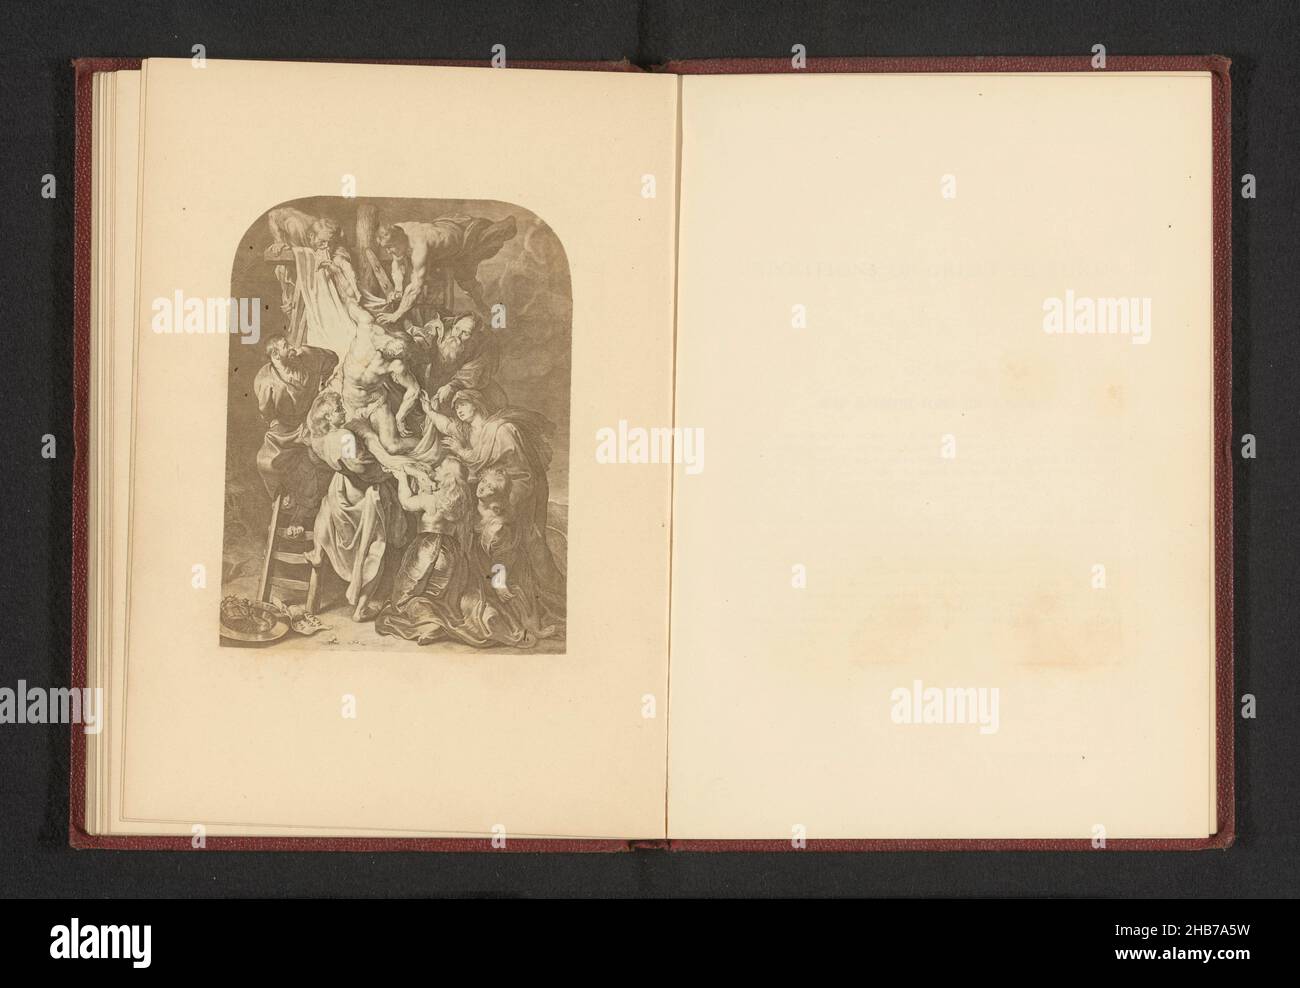 Fotoreproduktion eines Drucks nach einem Gemälde, das den Kreuzabstieg darstellt, Negretti & Zambra, nach: Peter Paul Rubens, c. 1853 - in oder vor 1863, fotografischer Träger, Albumin-Druck, Höhe 121 mm × Breite 91 mm Stockfoto